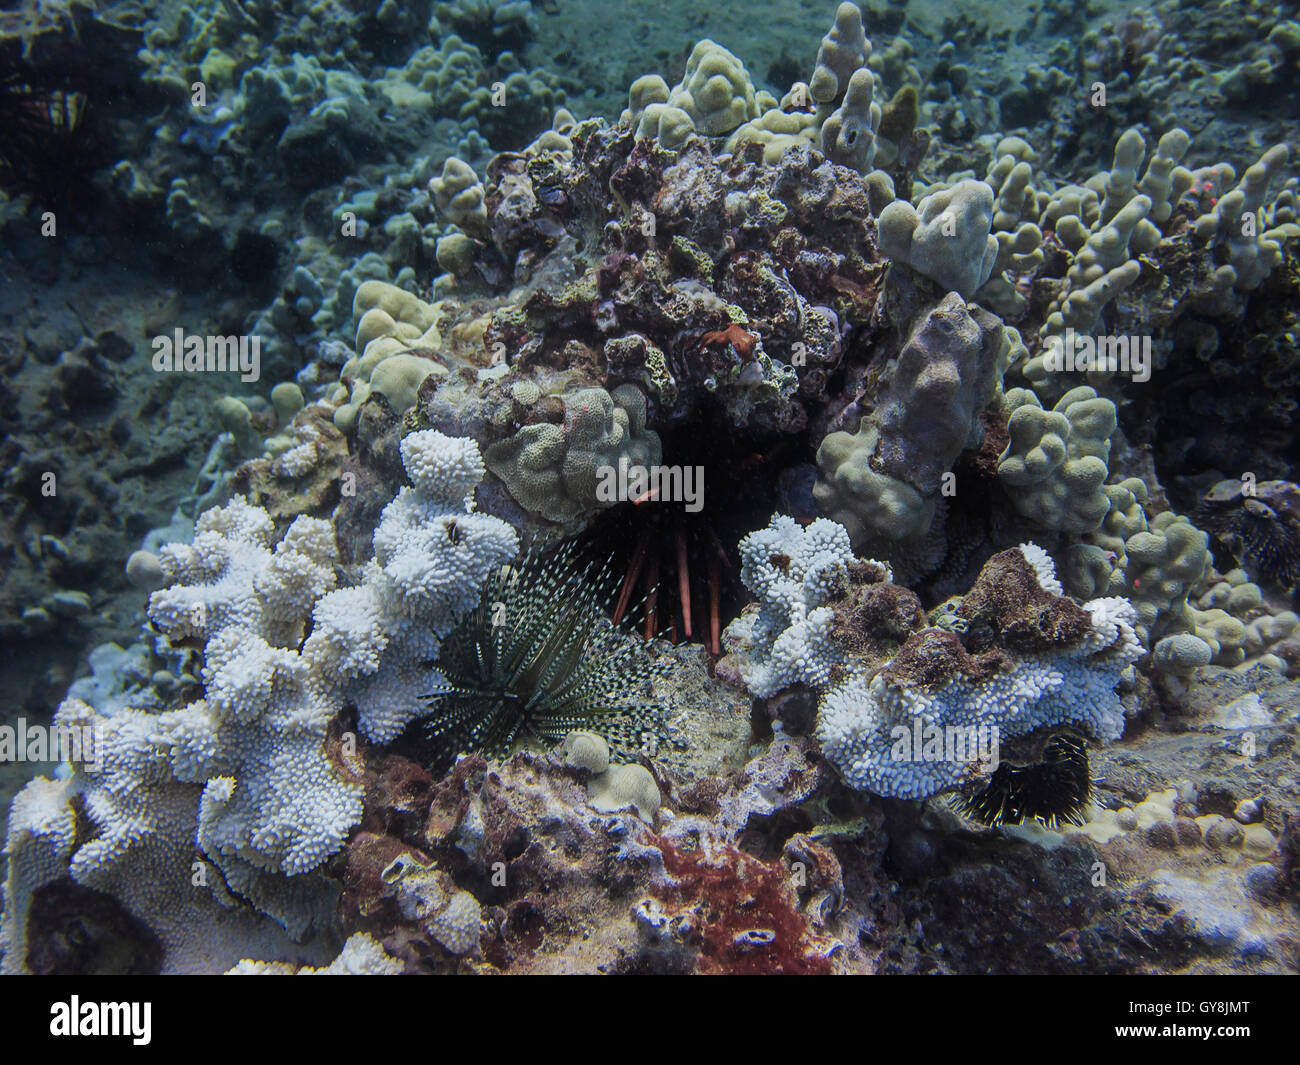 urchin colony Stock Photo